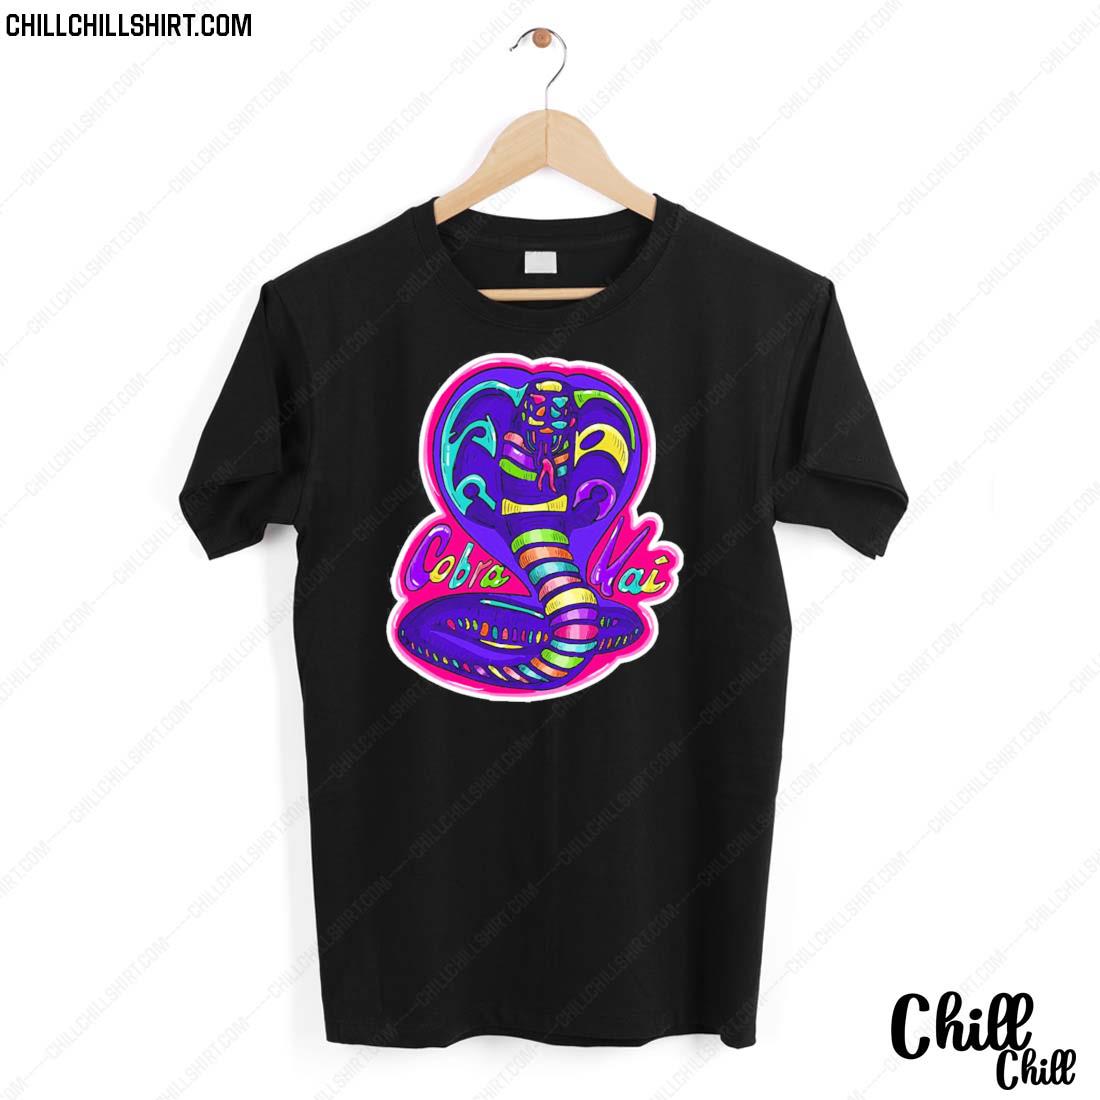 Official cobra Kai Shirt